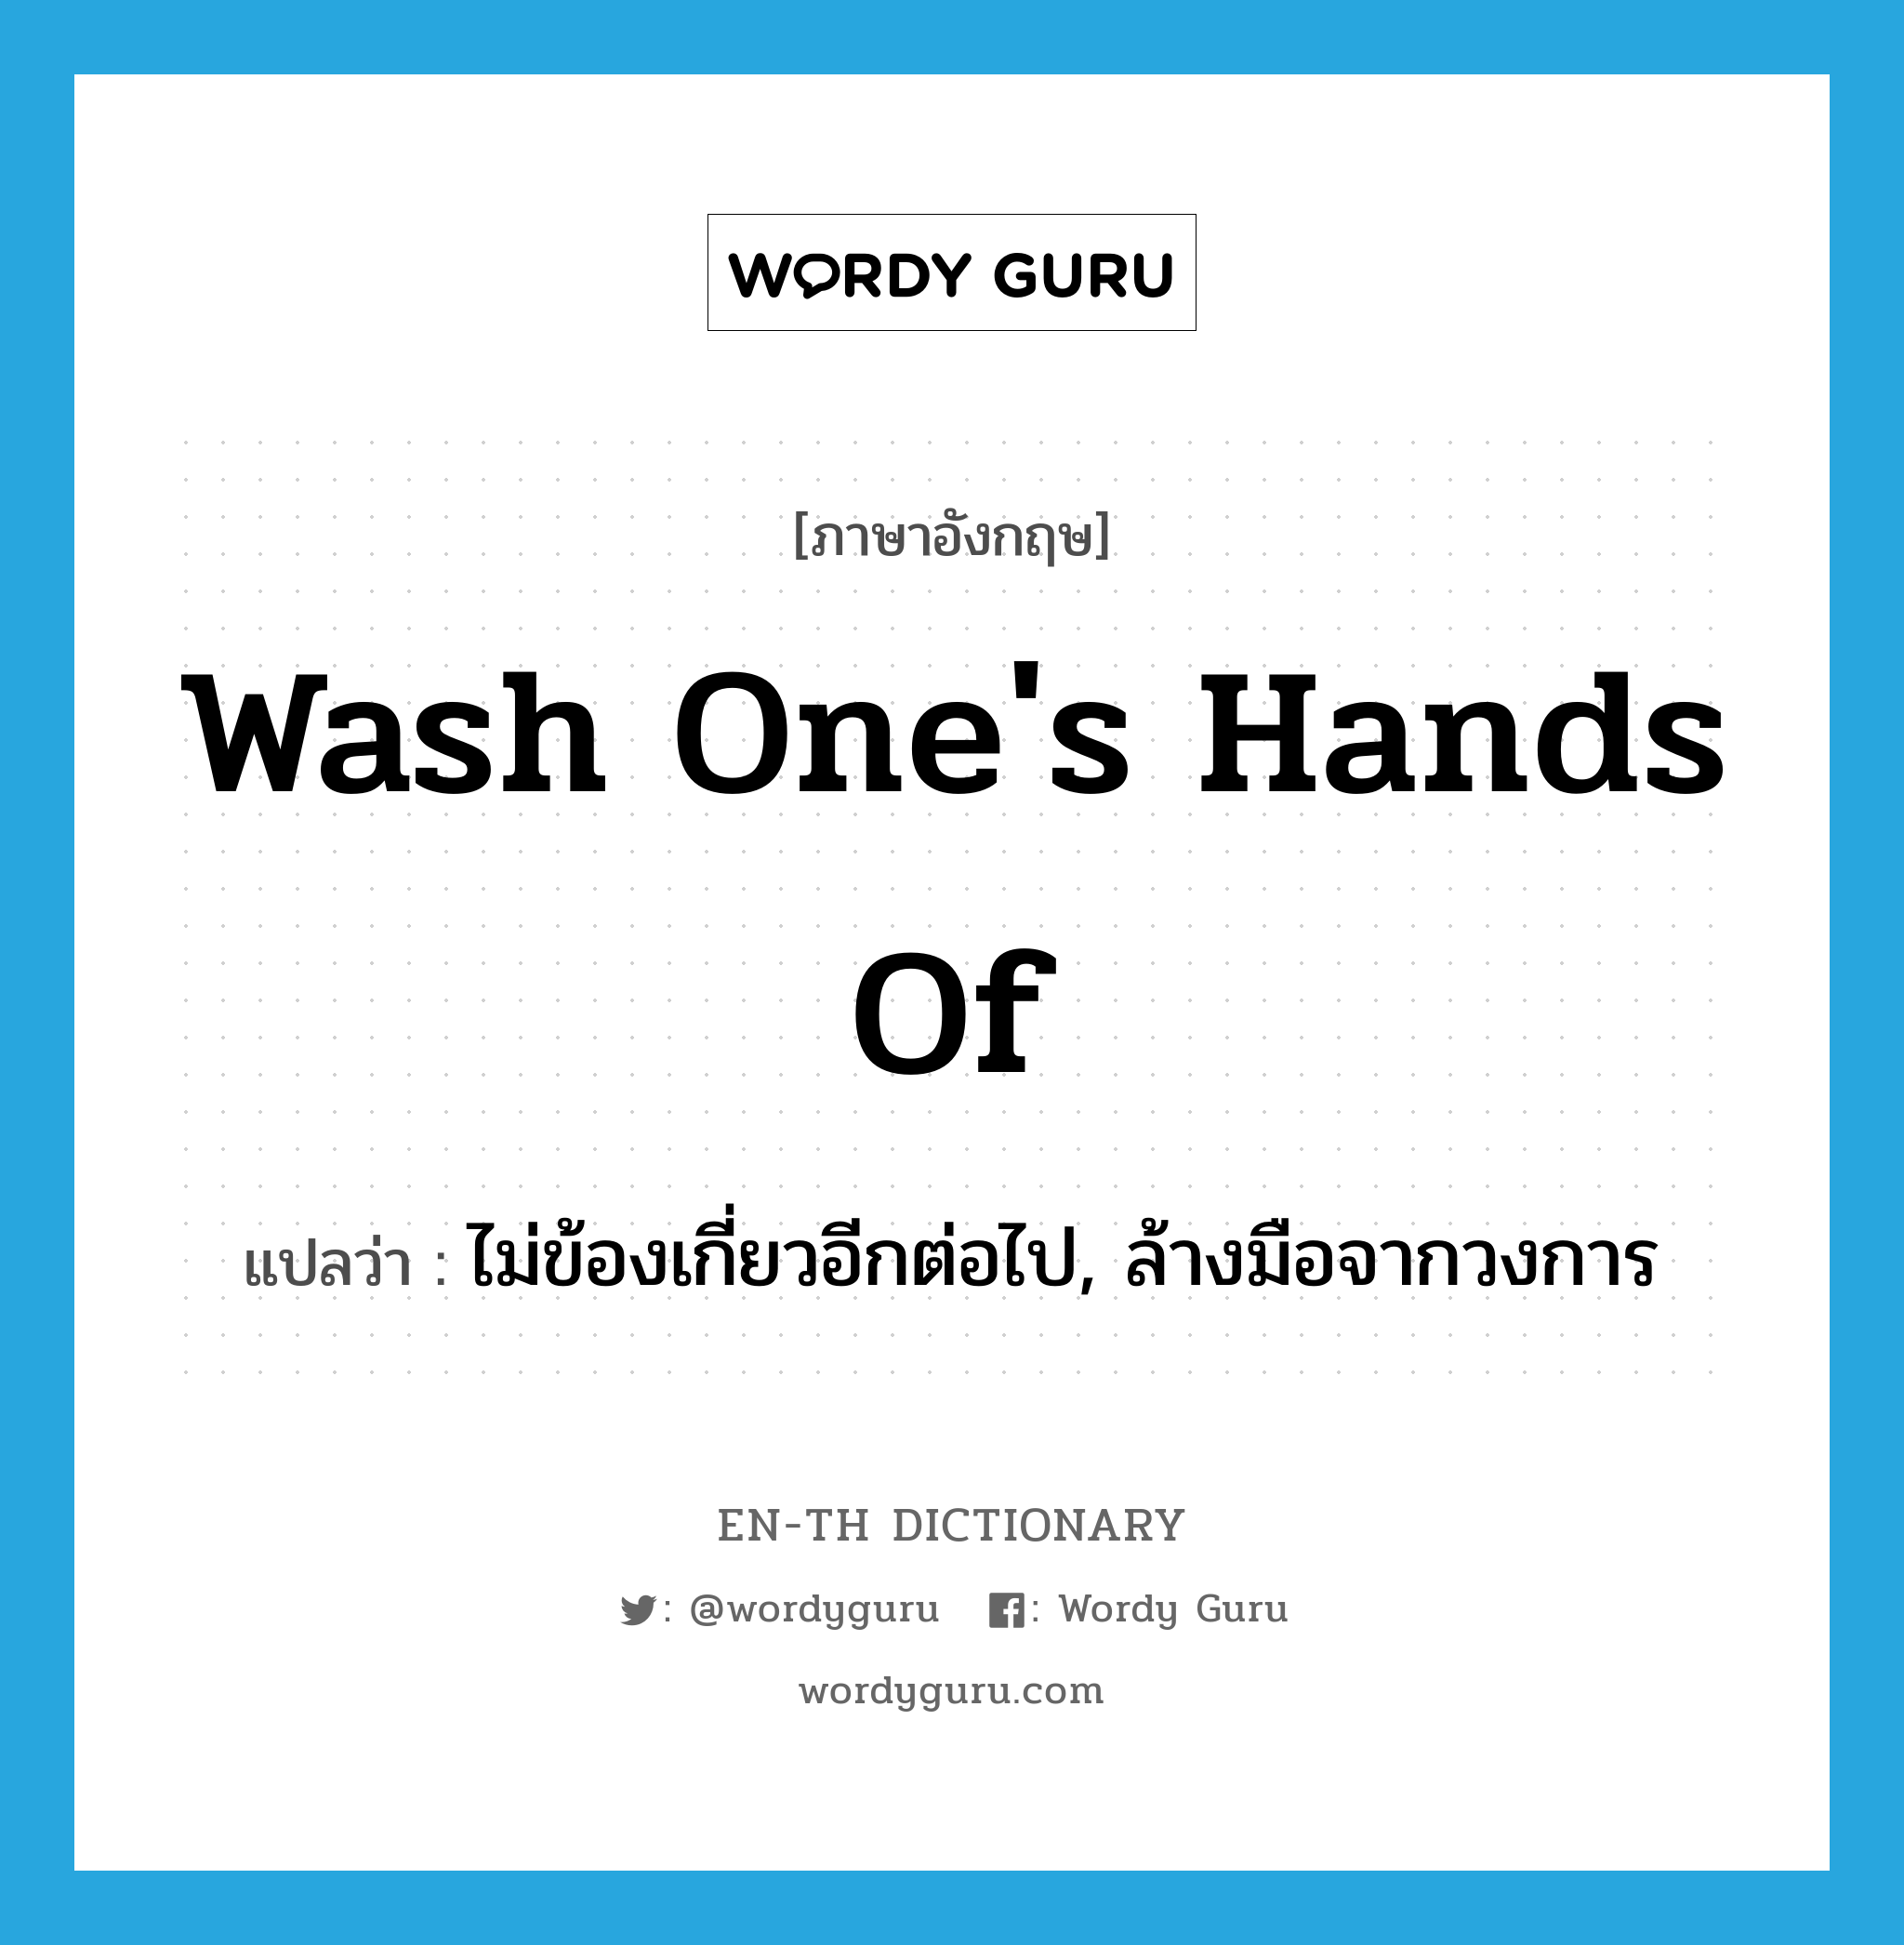 ไม่ข้องเกี่ยวอีกต่อไป, ล้างมือจากวงการ ภาษาอังกฤษ?, คำศัพท์ภาษาอังกฤษ ไม่ข้องเกี่ยวอีกต่อไป, ล้างมือจากวงการ แปลว่า wash one's hands of ประเภท IDM หมวด IDM